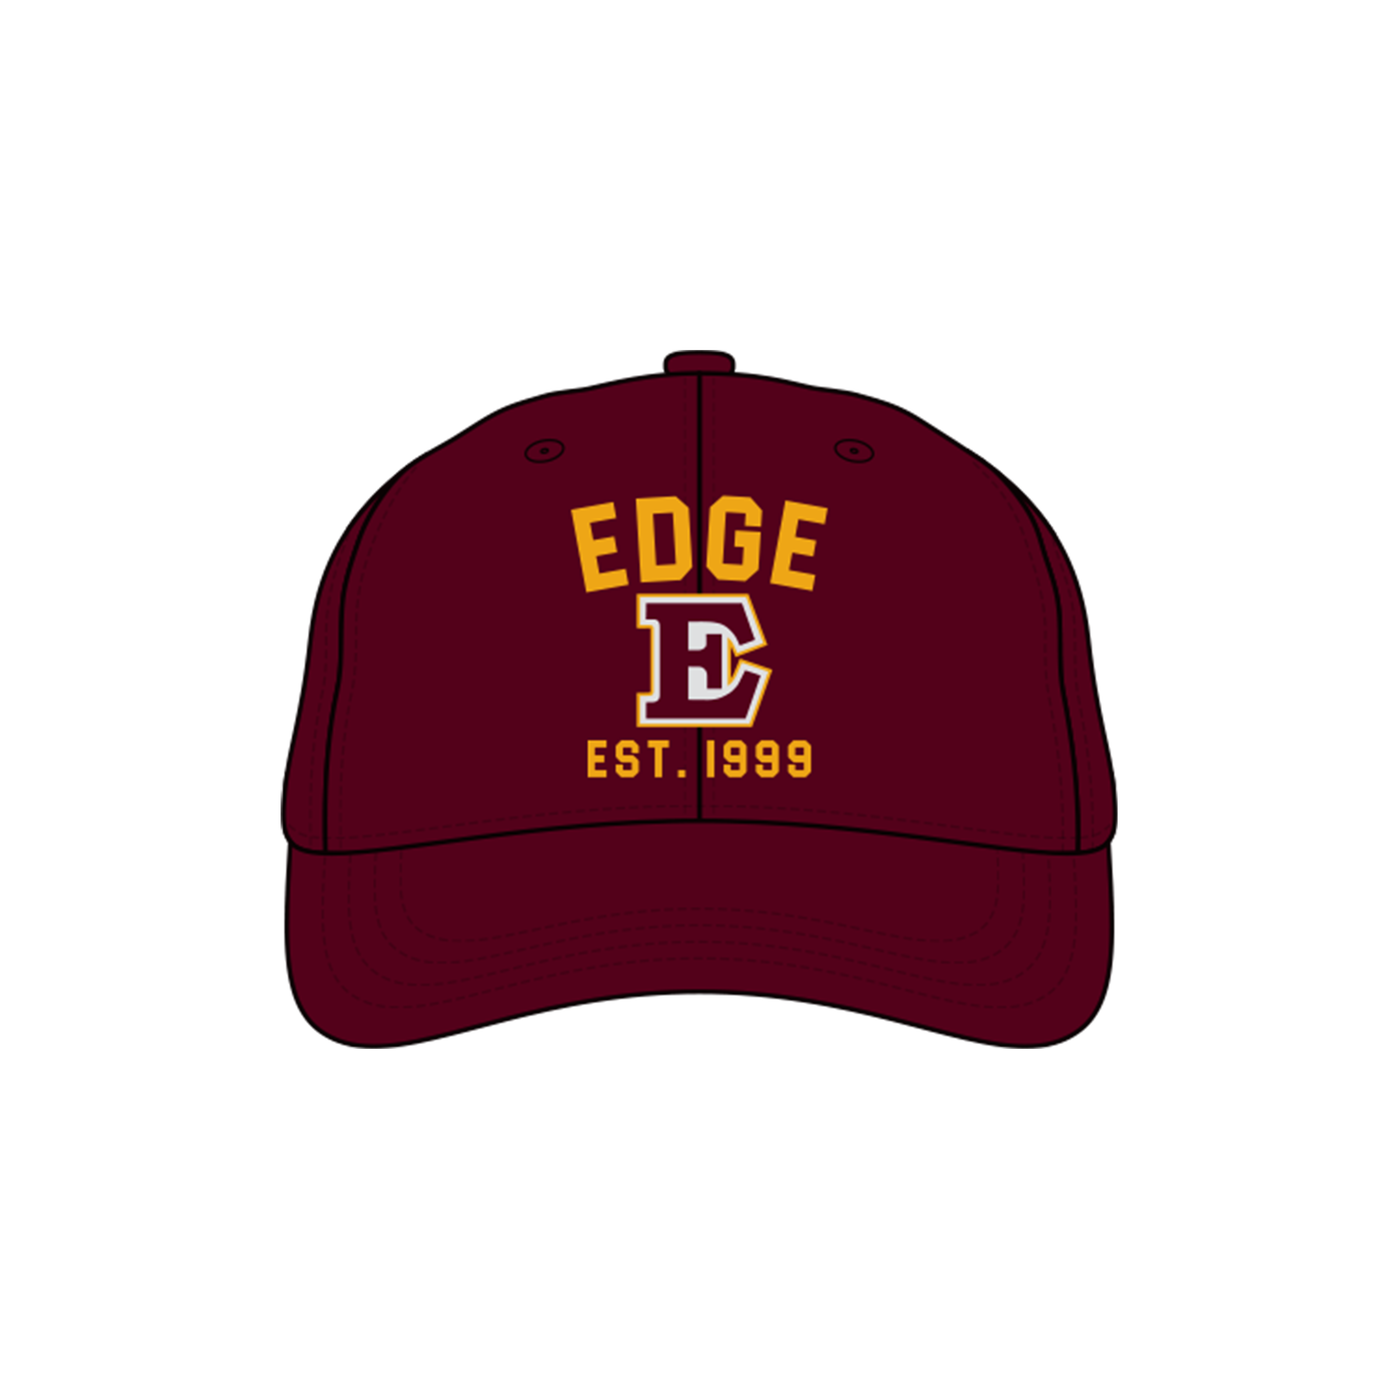 Edge 1999 Adjustable Hat